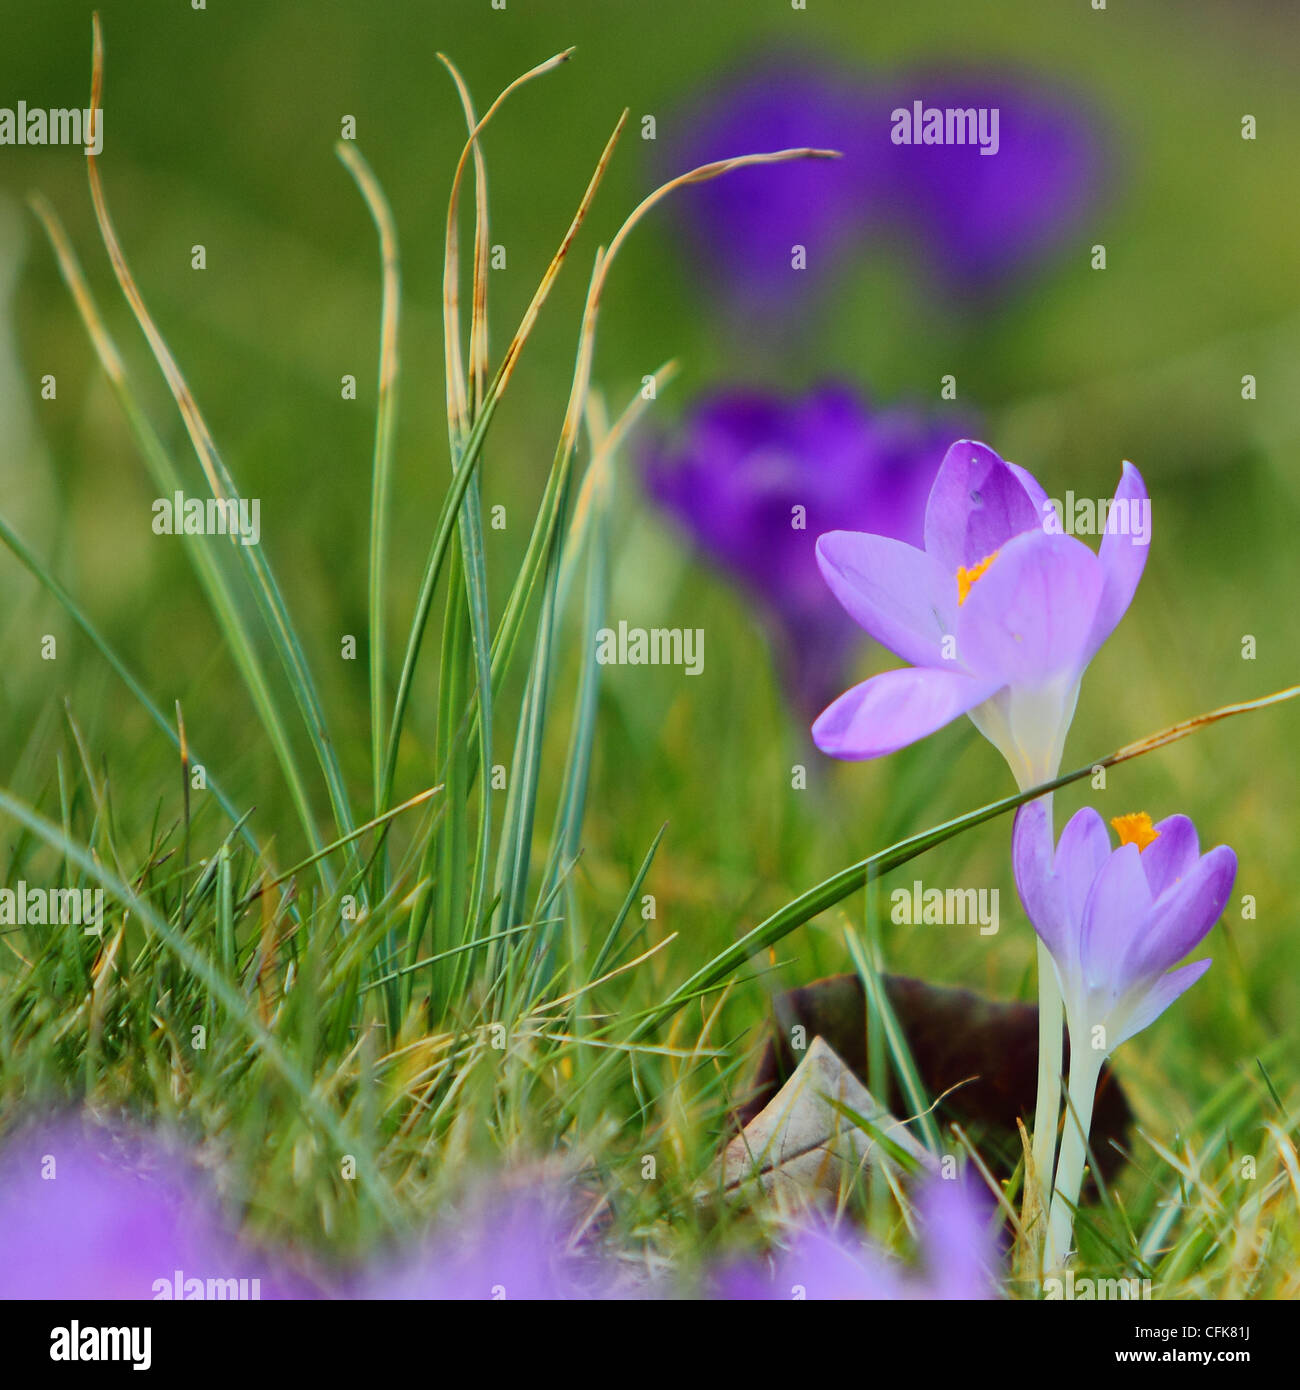 Purple crocus of garden Stock Photo